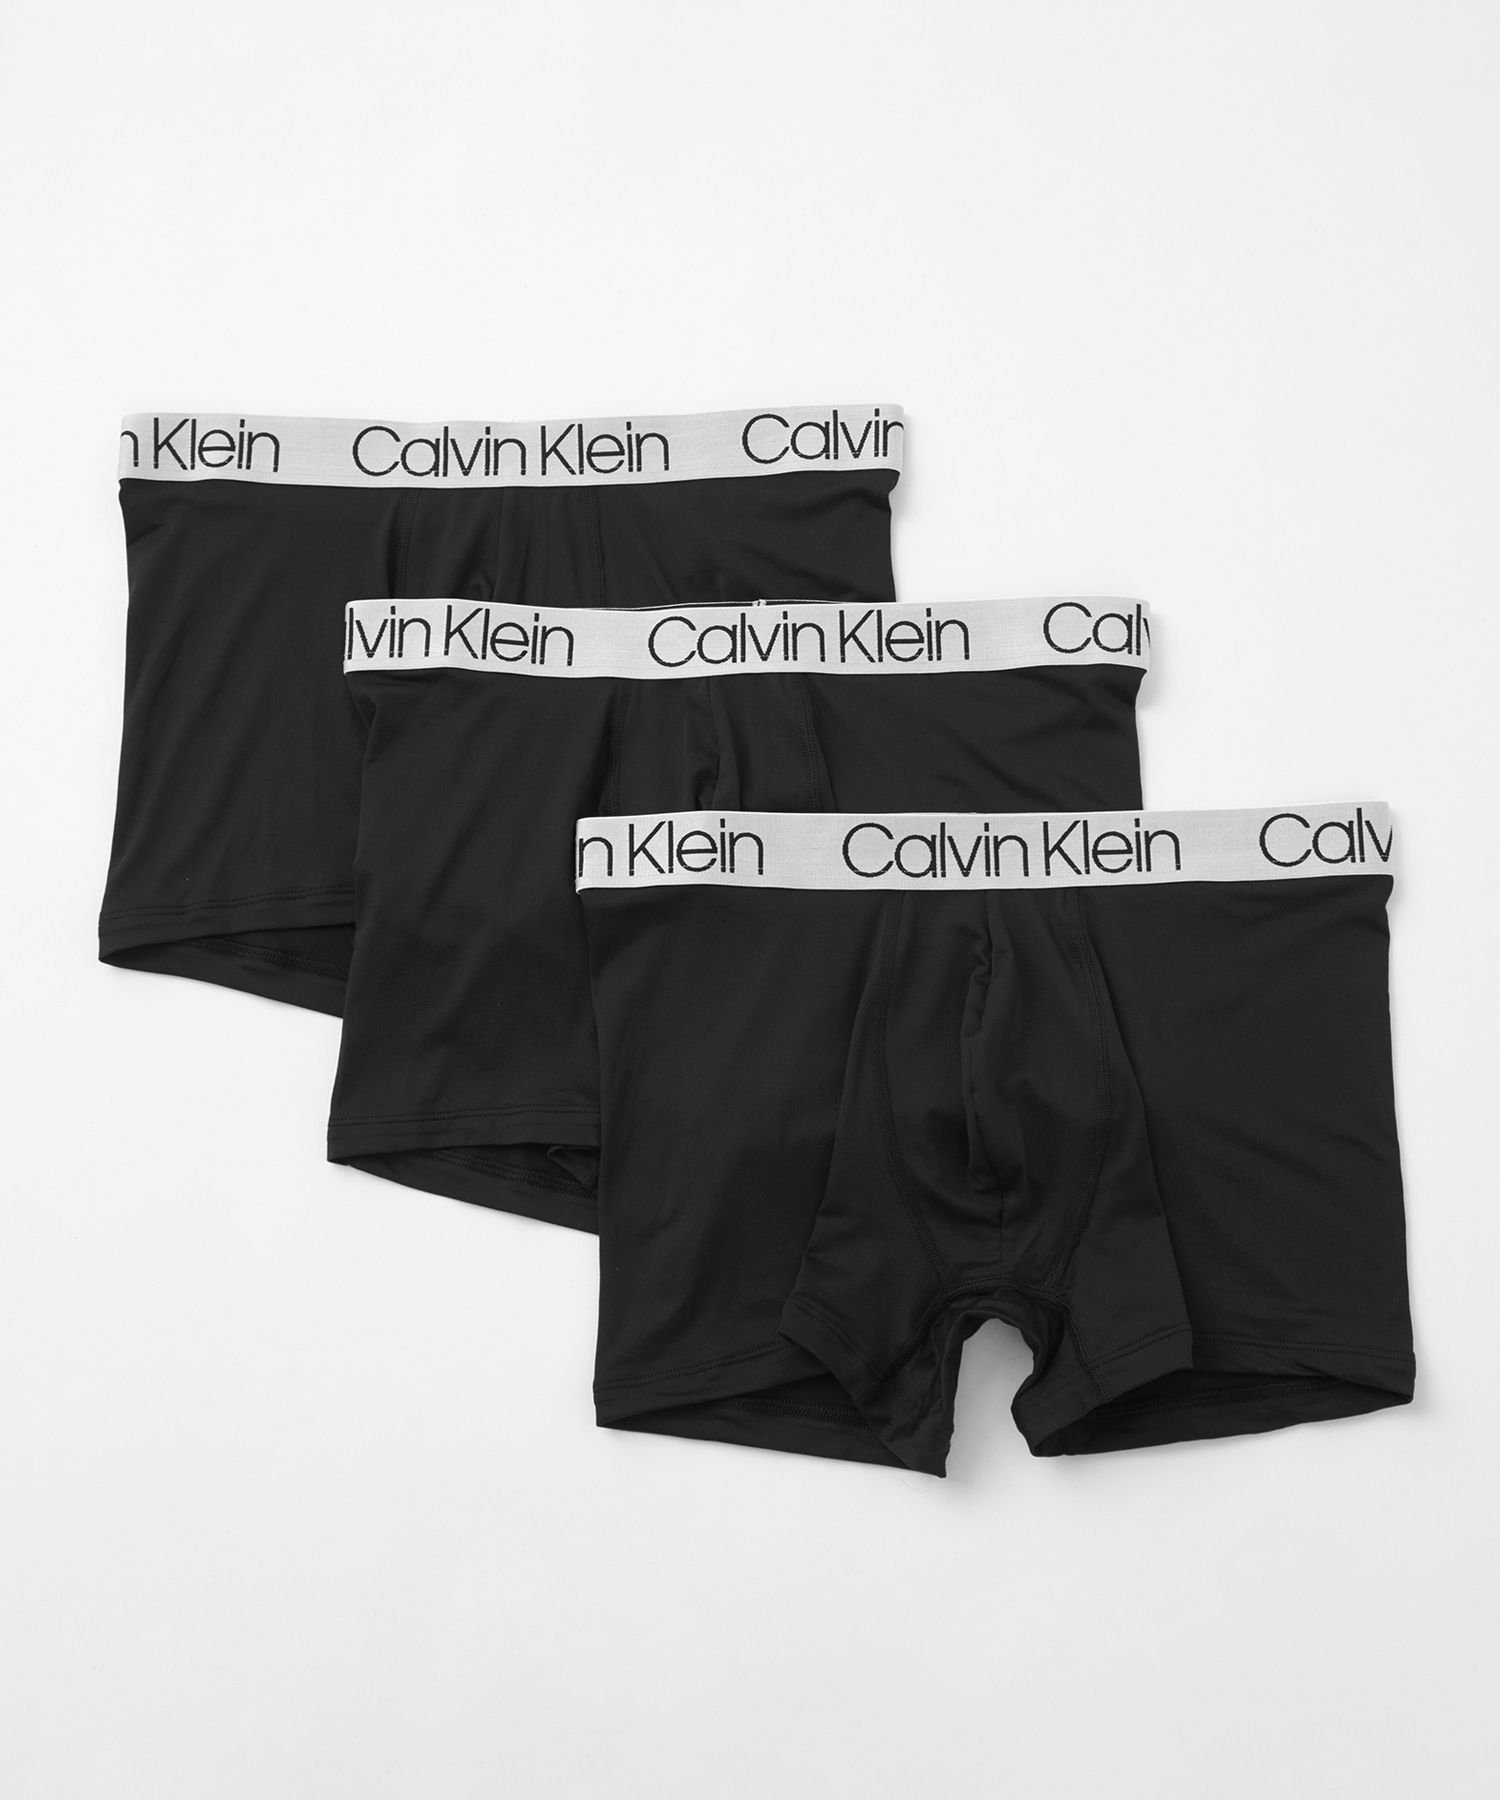 カルバン・クライン Calvin Klein Underwear (M)【公式ショップ】 カルバンクライン クロマティック ボクサーパンツ 3枚パック Calvin Klein Underwear NP2213O カルバン・クライン インナー・ルームウェア ボクサーパンツ・トランクス ブラック【送料無料】